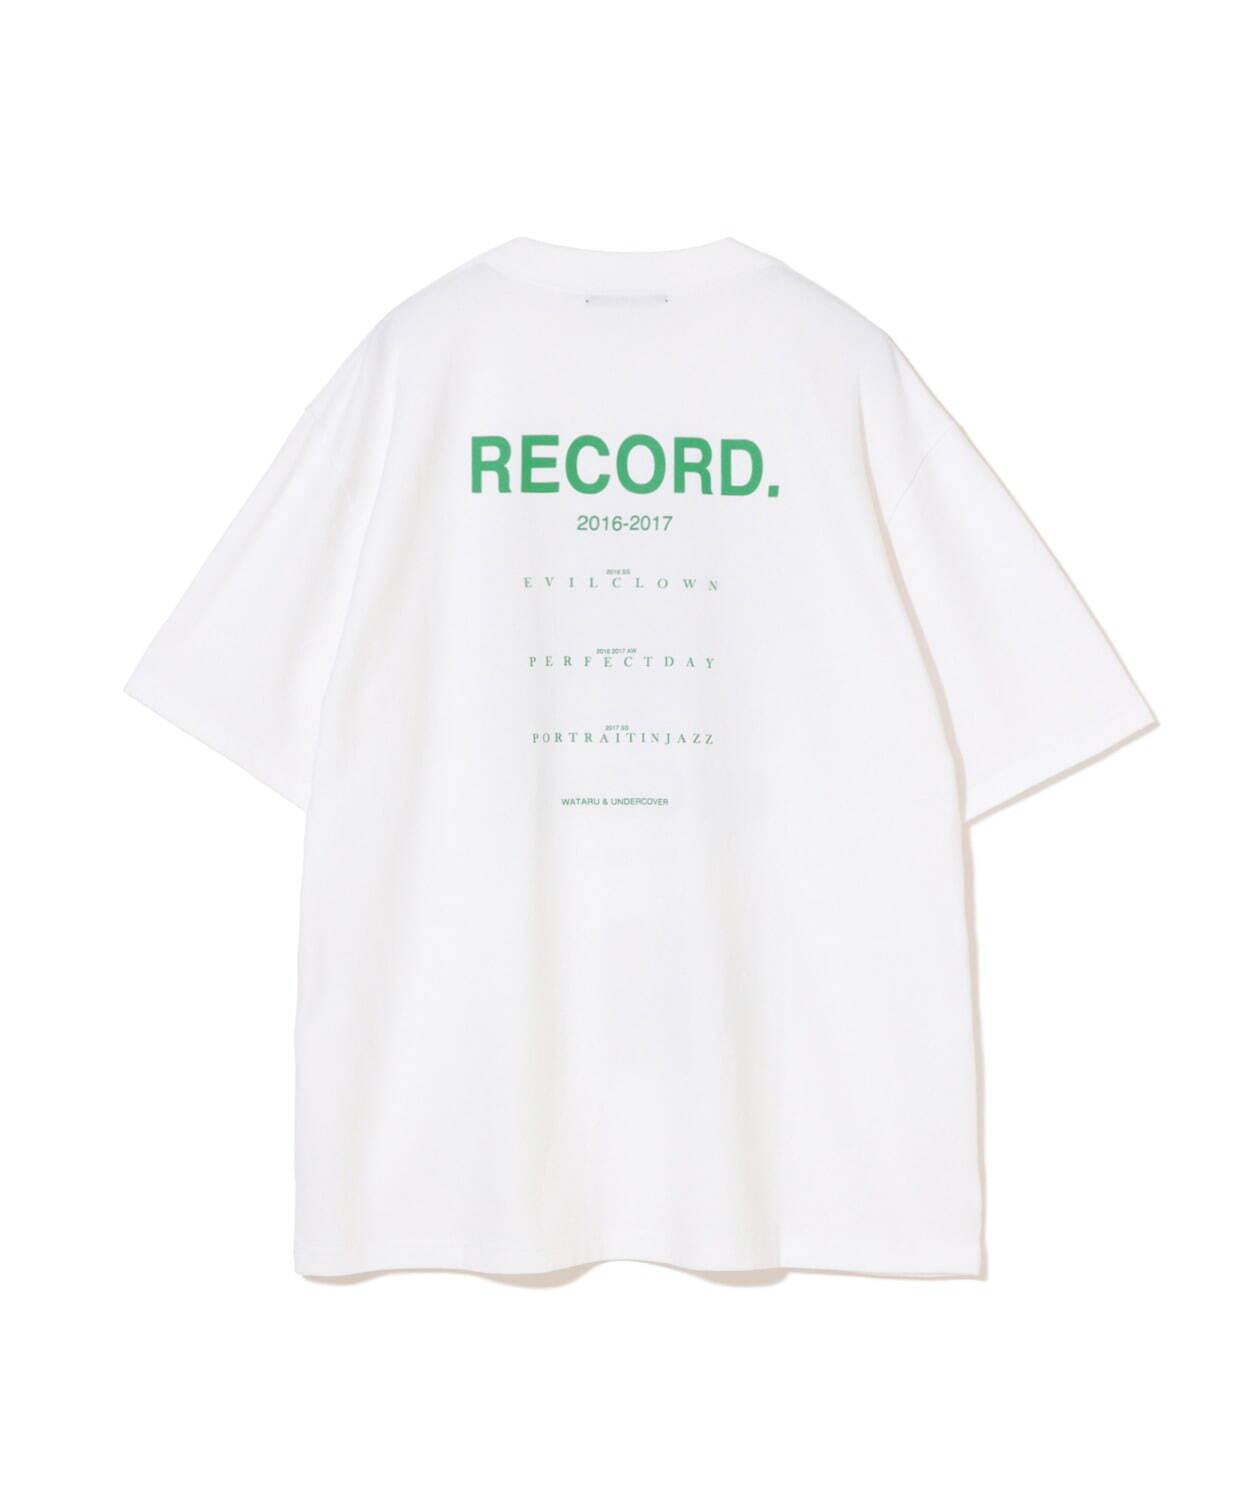 JONIOUNDERCOVER x WATARU RECORD Tシャツ写真集セット 限定